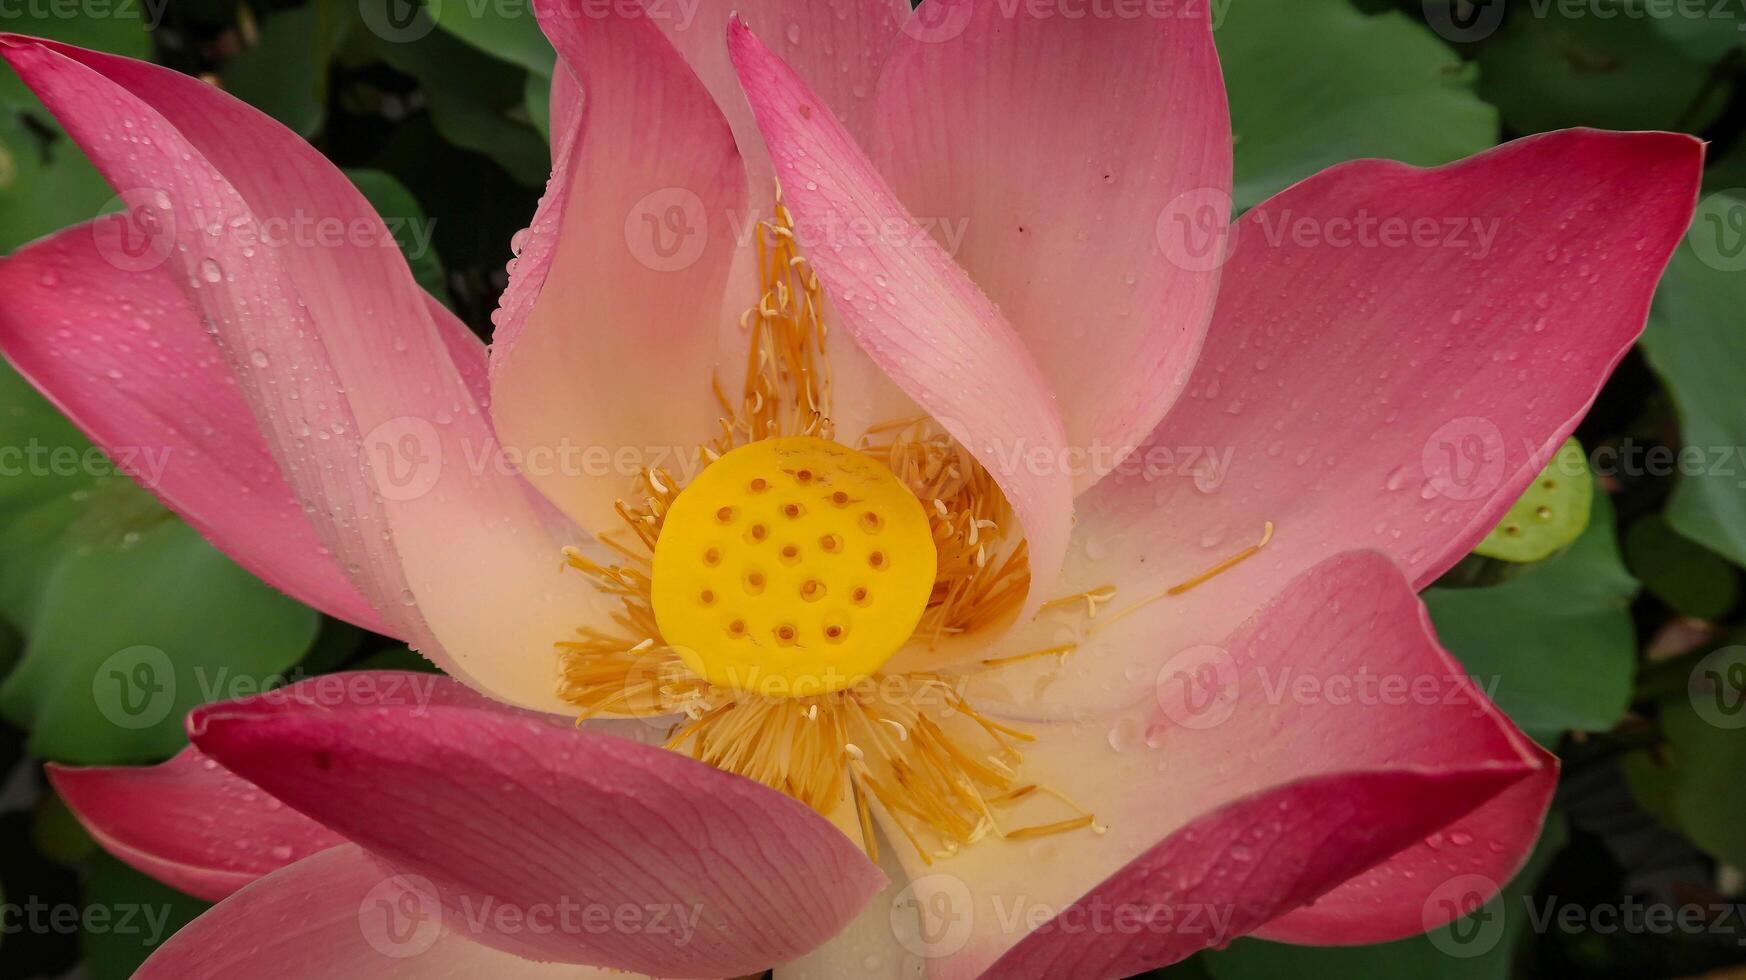 brillant épanouissement rose l'eau lotus fleur croissance parmi luxuriant vert feuilles sur calme étang photo